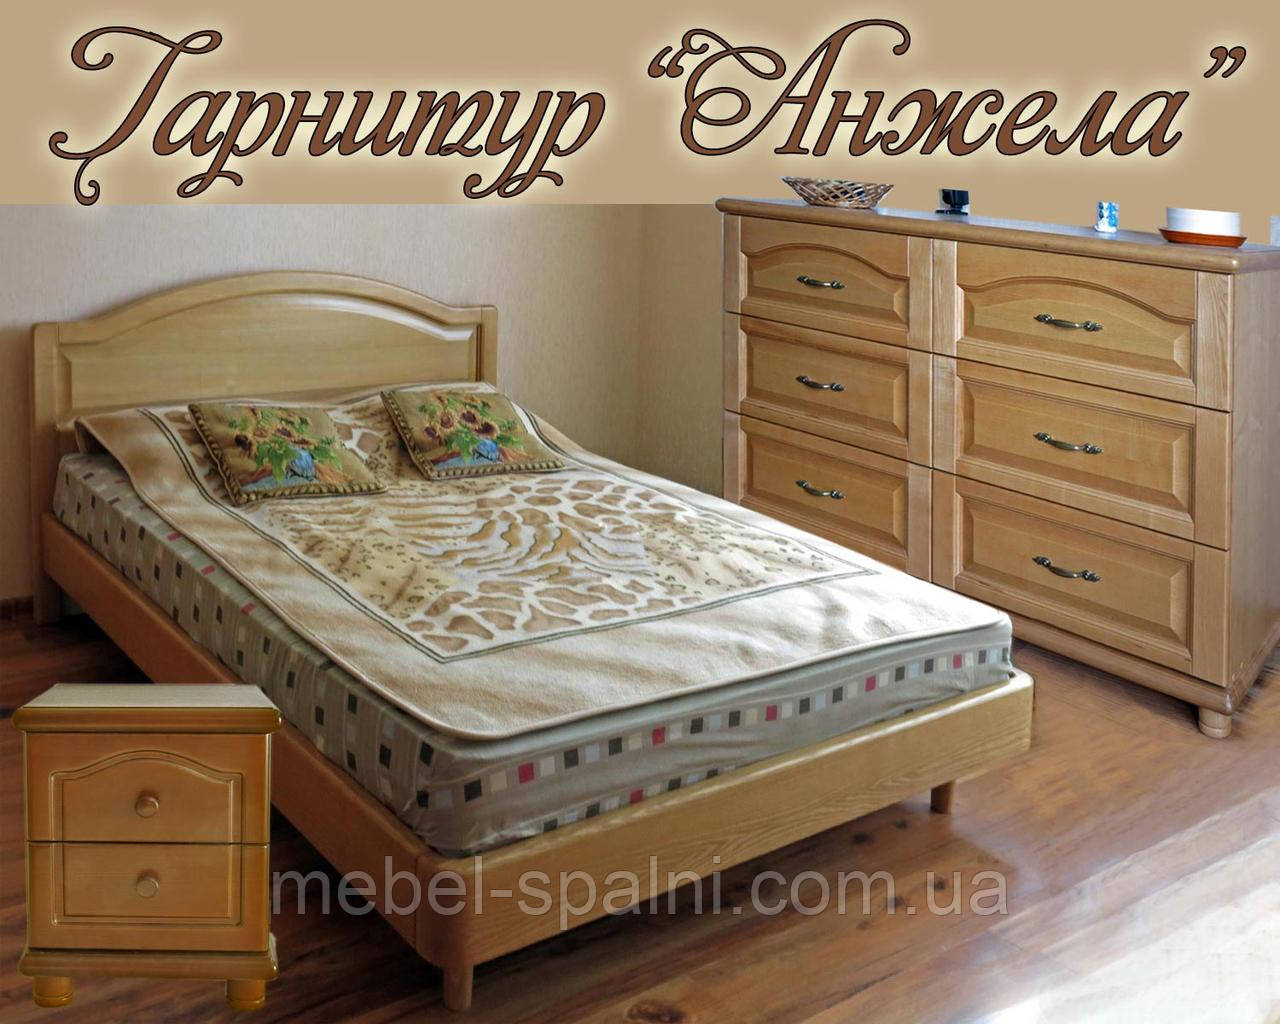 Спальний гарнітур "Анжела" меблі для спальні. Біла, гарна, дерев'яна спальня